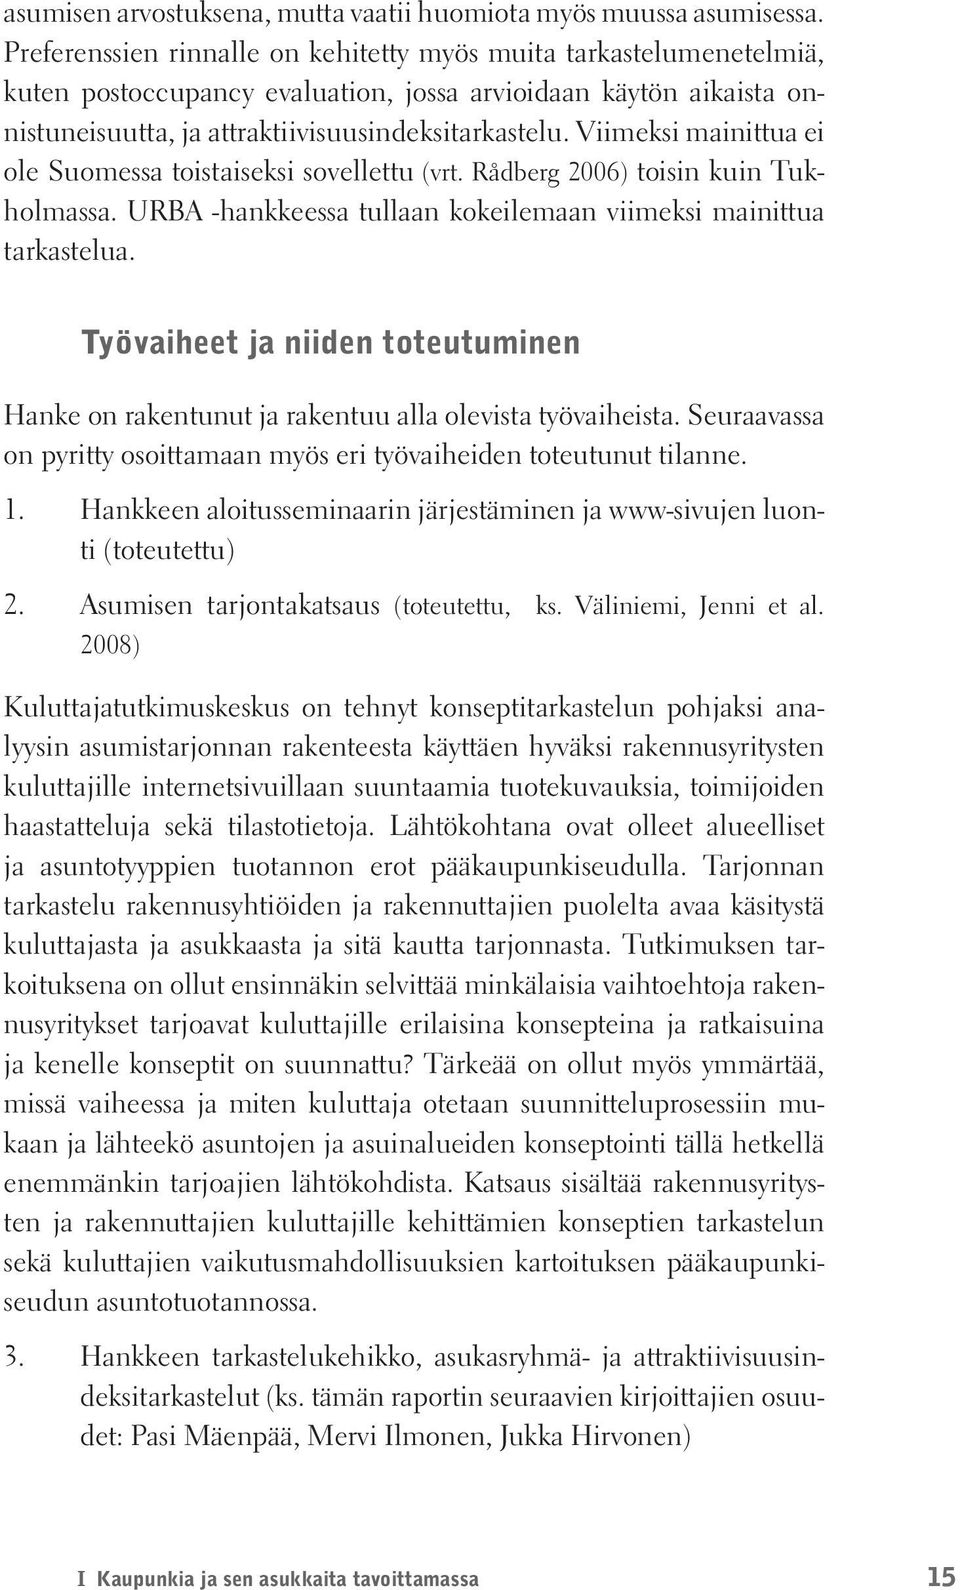 Viimeksi mainittua ei ole Suomessa toistaiseksi sovellettu (vrt. Rådberg 2006) toisin kuin Tukholmassa. URBA -hankkeessa tullaan kokeilemaan viimeksi mainittua tarkastelua.